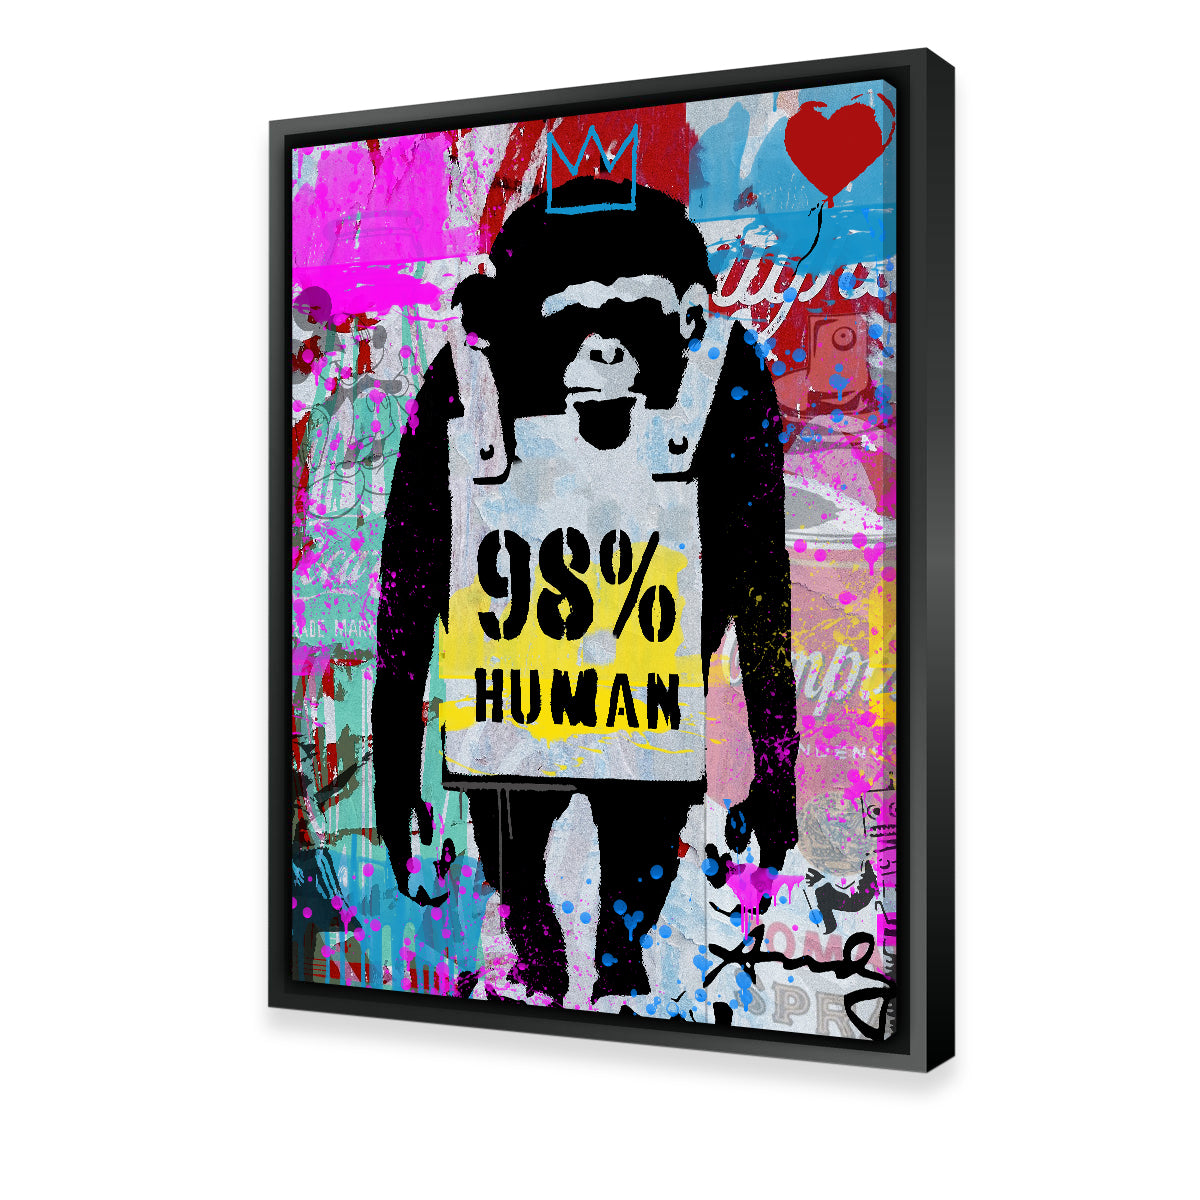 98% Human